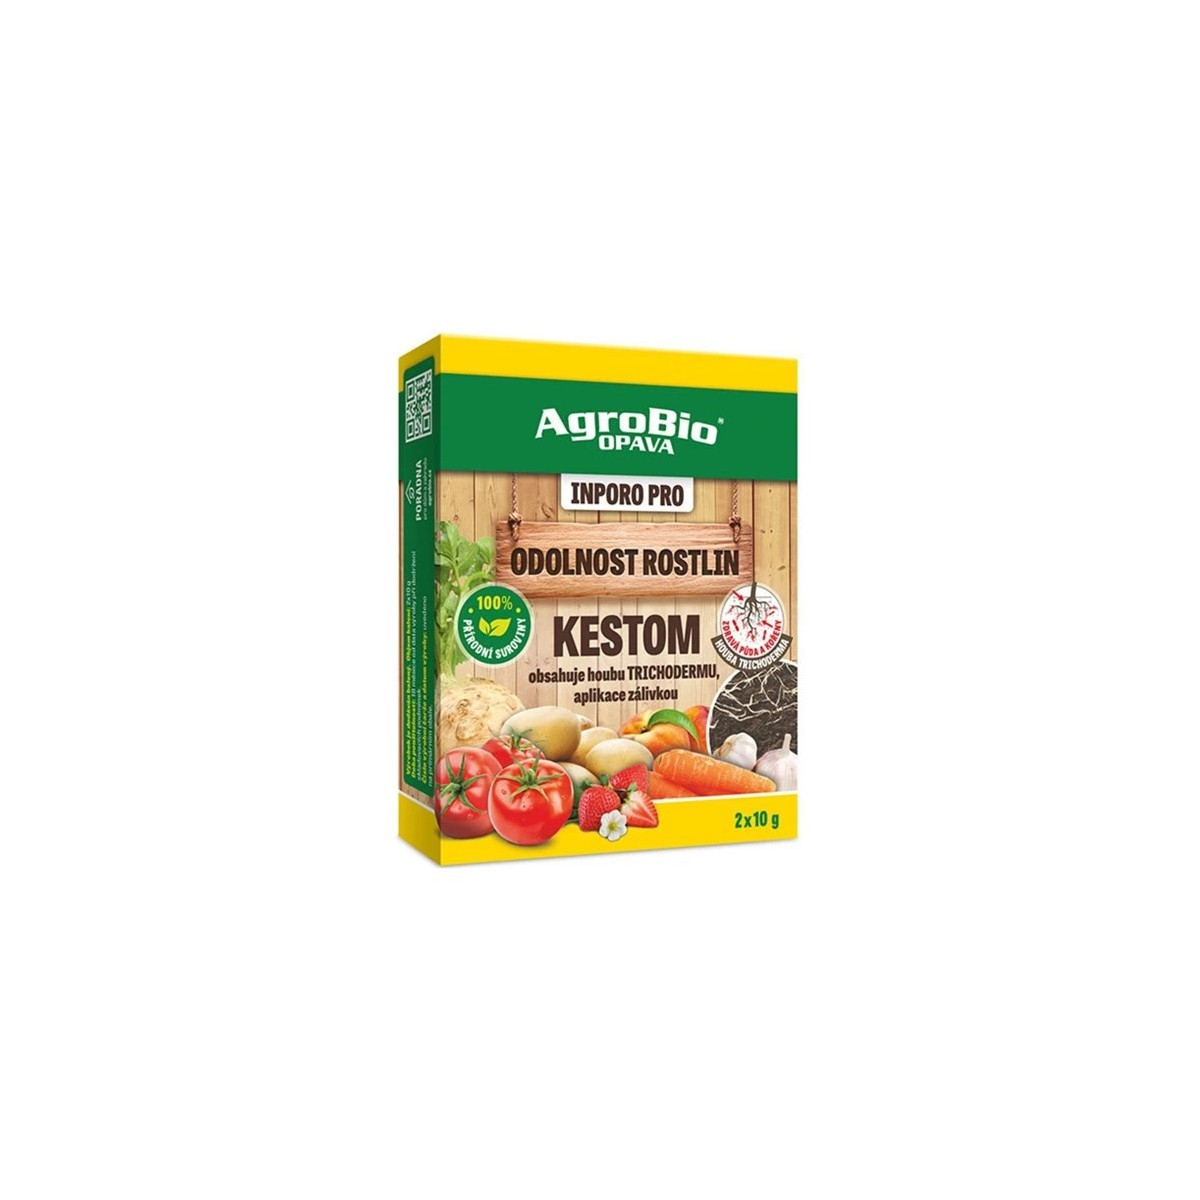 INPORO Pro Kestom - Odolnost rostlin - AgroBio - 2x10 g